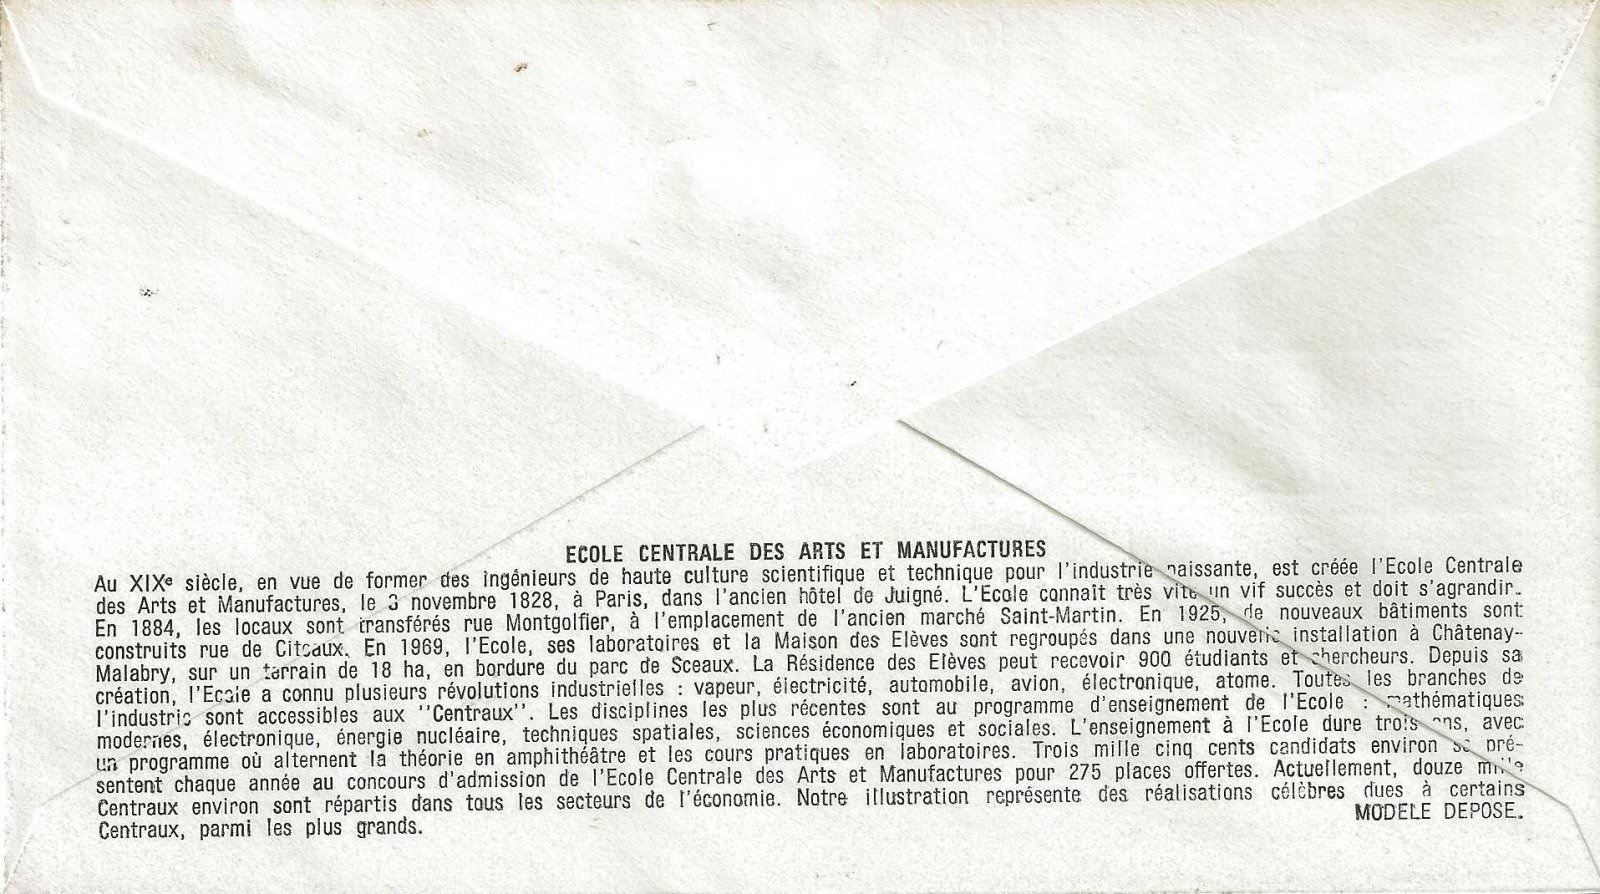 ECOLE CENTRALE DES ARTS ET MANUFACTURES 1969 VERSO